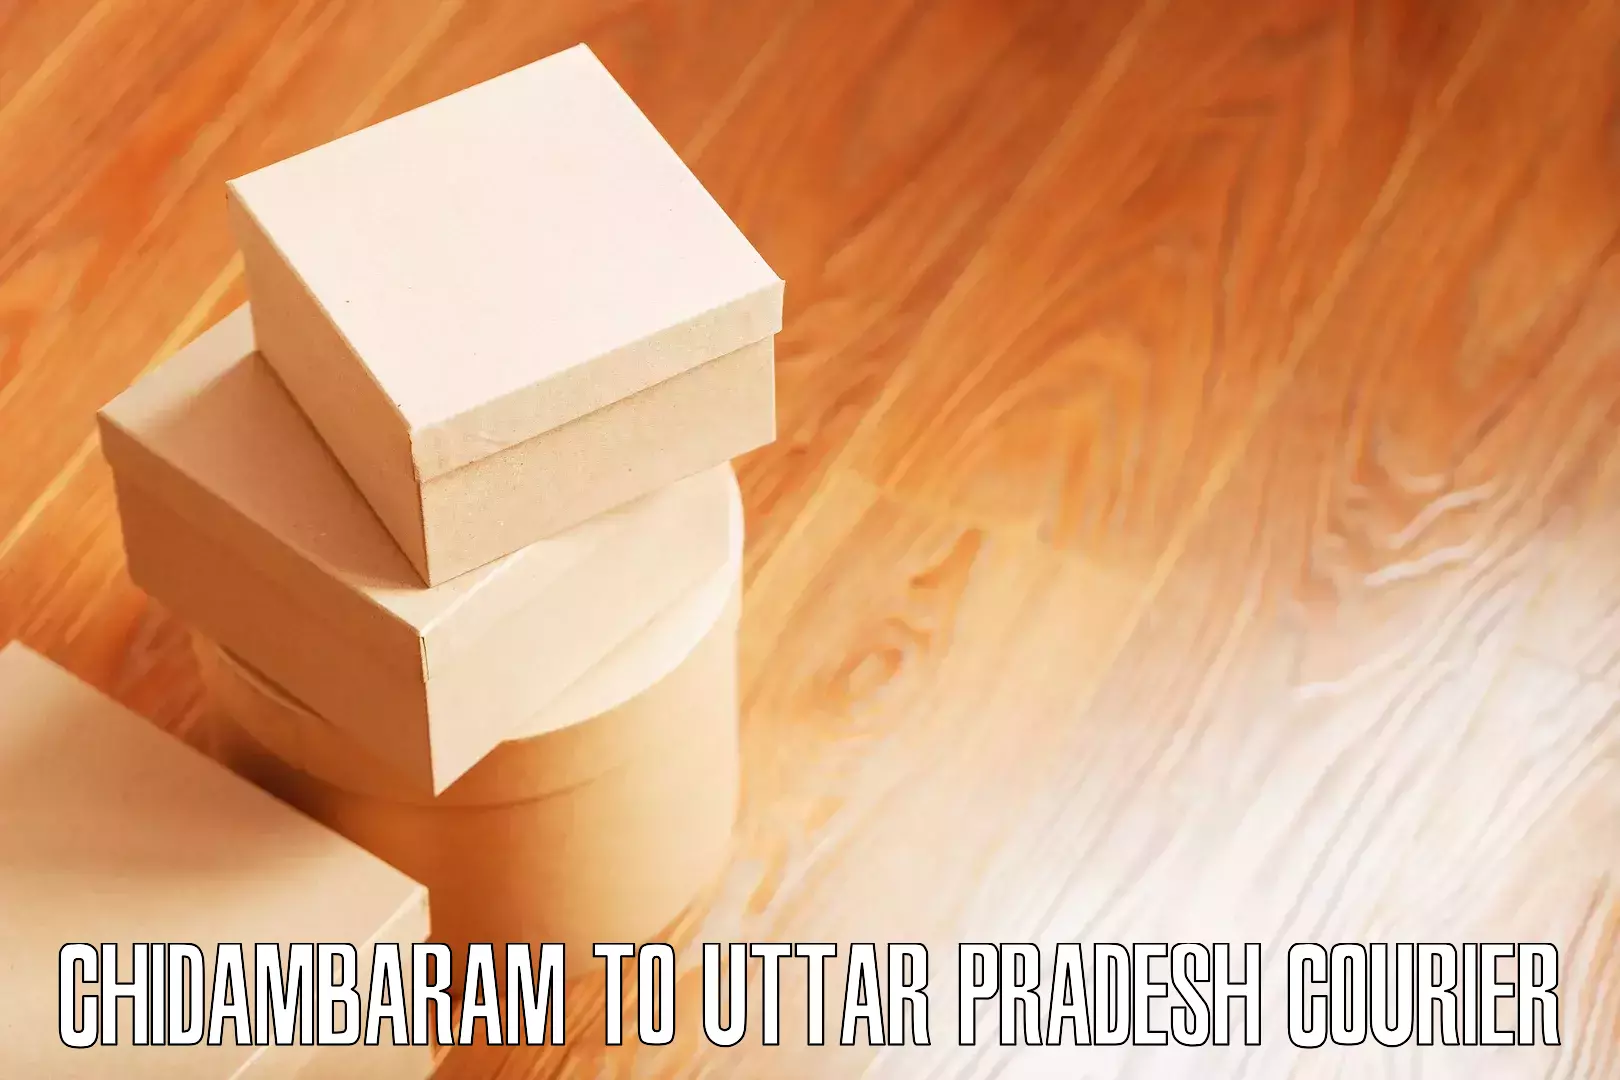 Expert packing and moving Chidambaram to Firozabad